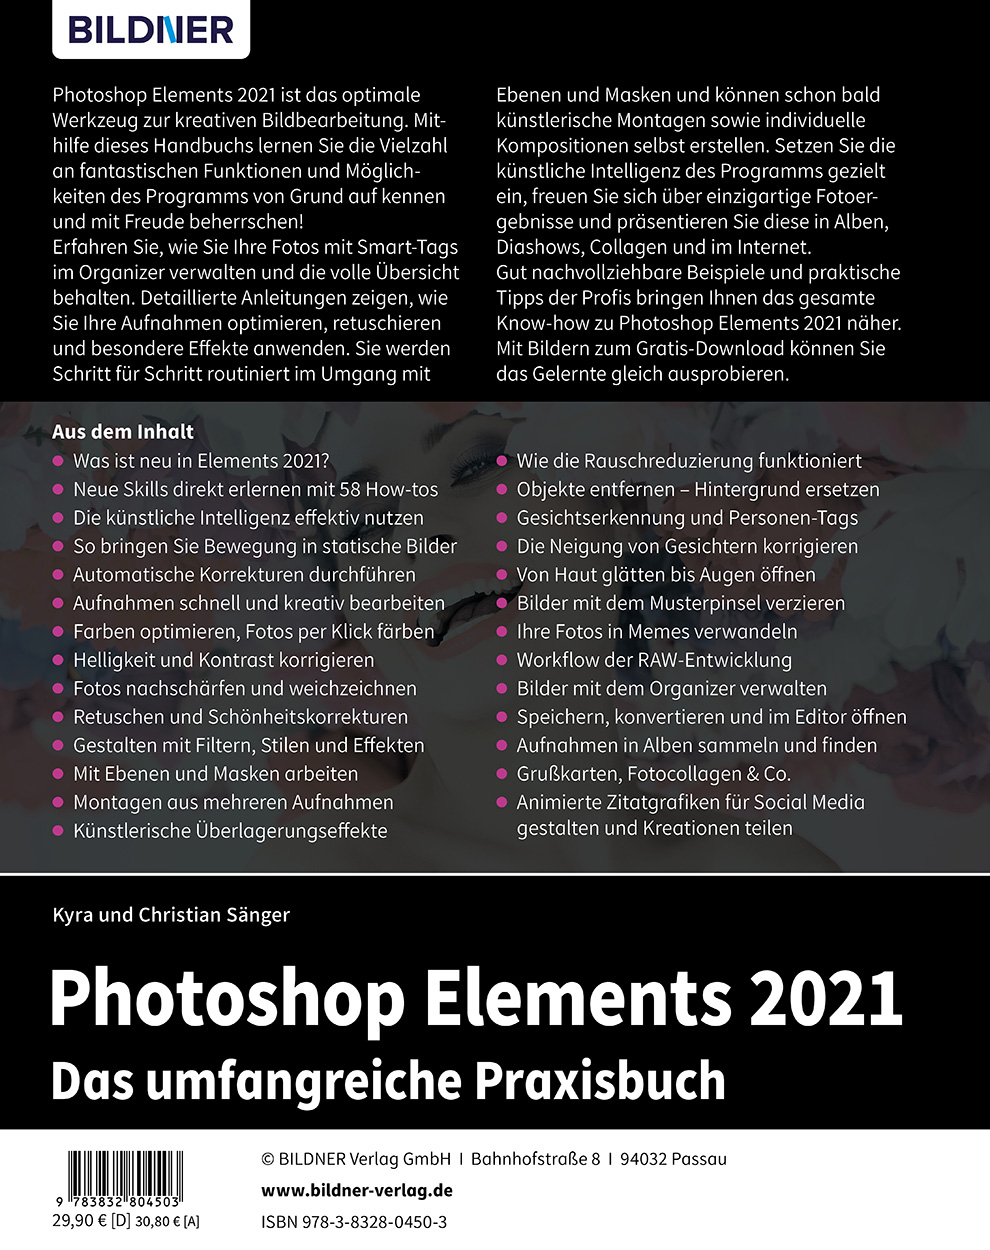 Photoshop Elements 21 Bildner Verlag Gmbh Buchverlag In Passau